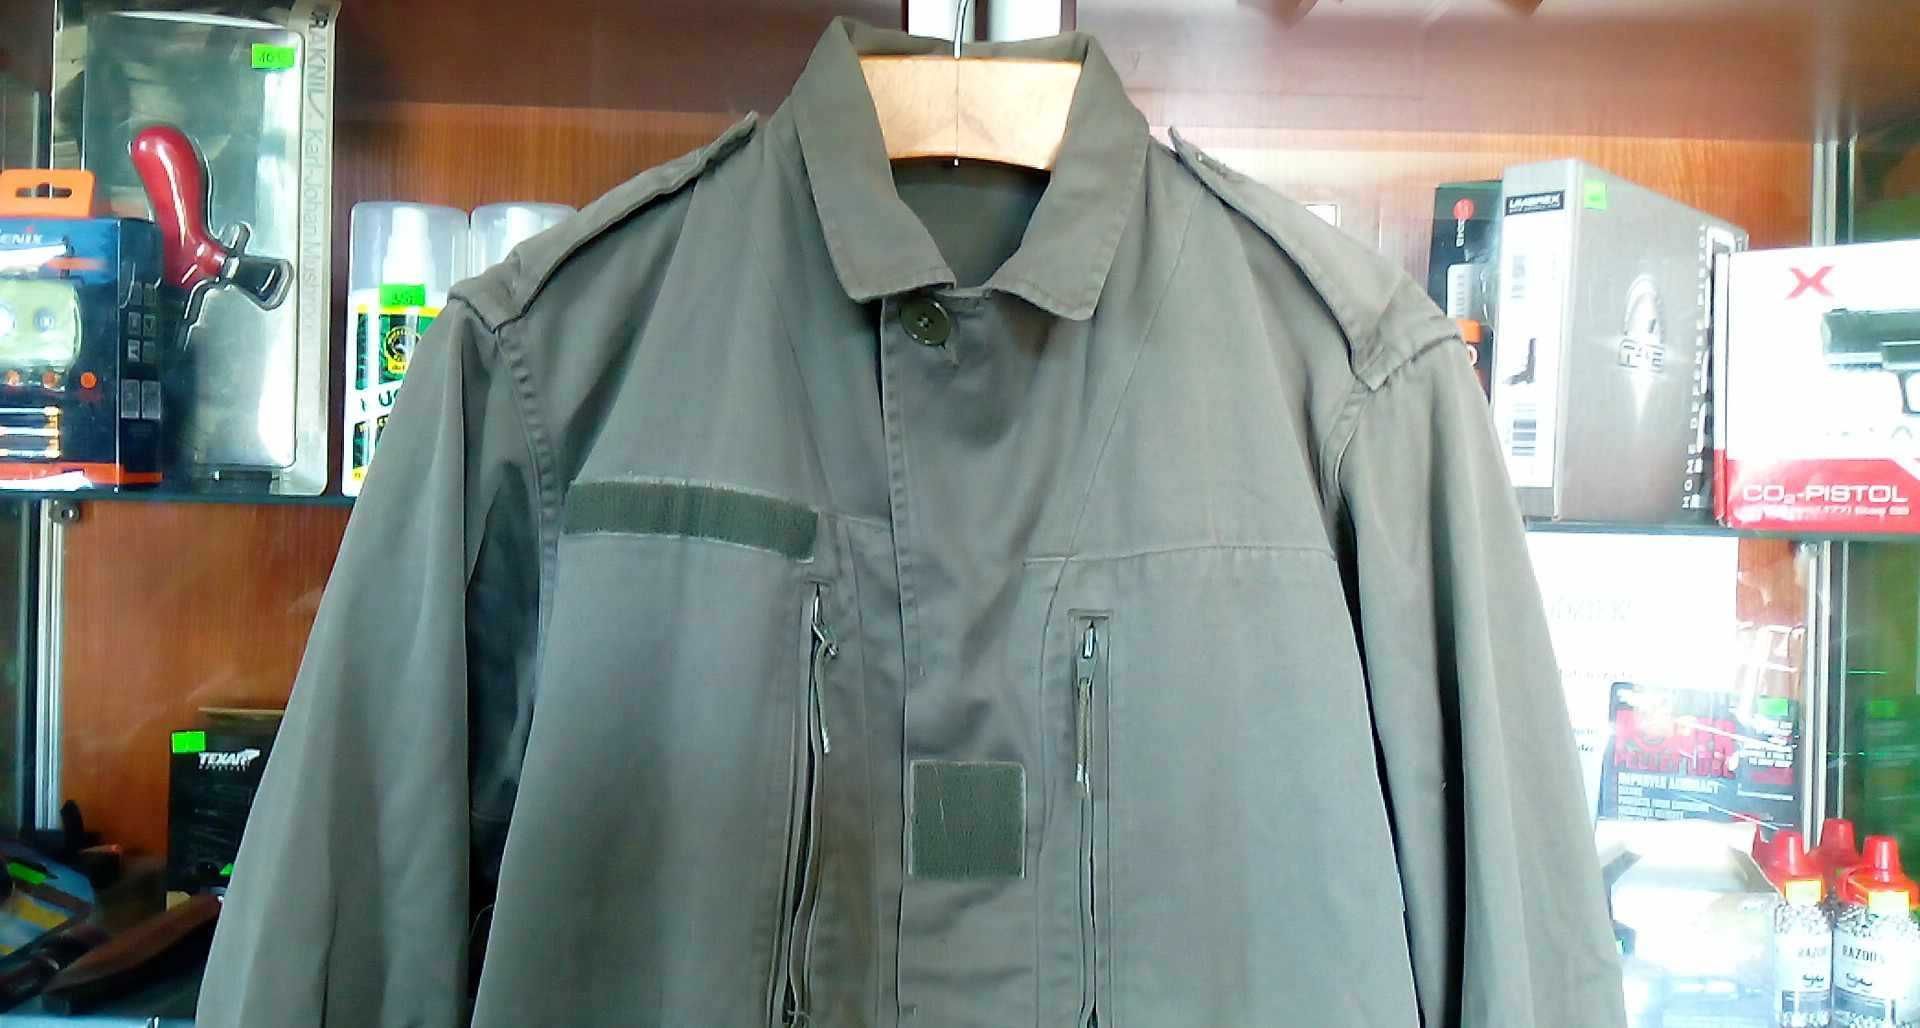 Bluza Armii Francuskiej/Legii Cudzoziemskiej Olive r96M 7080/9000